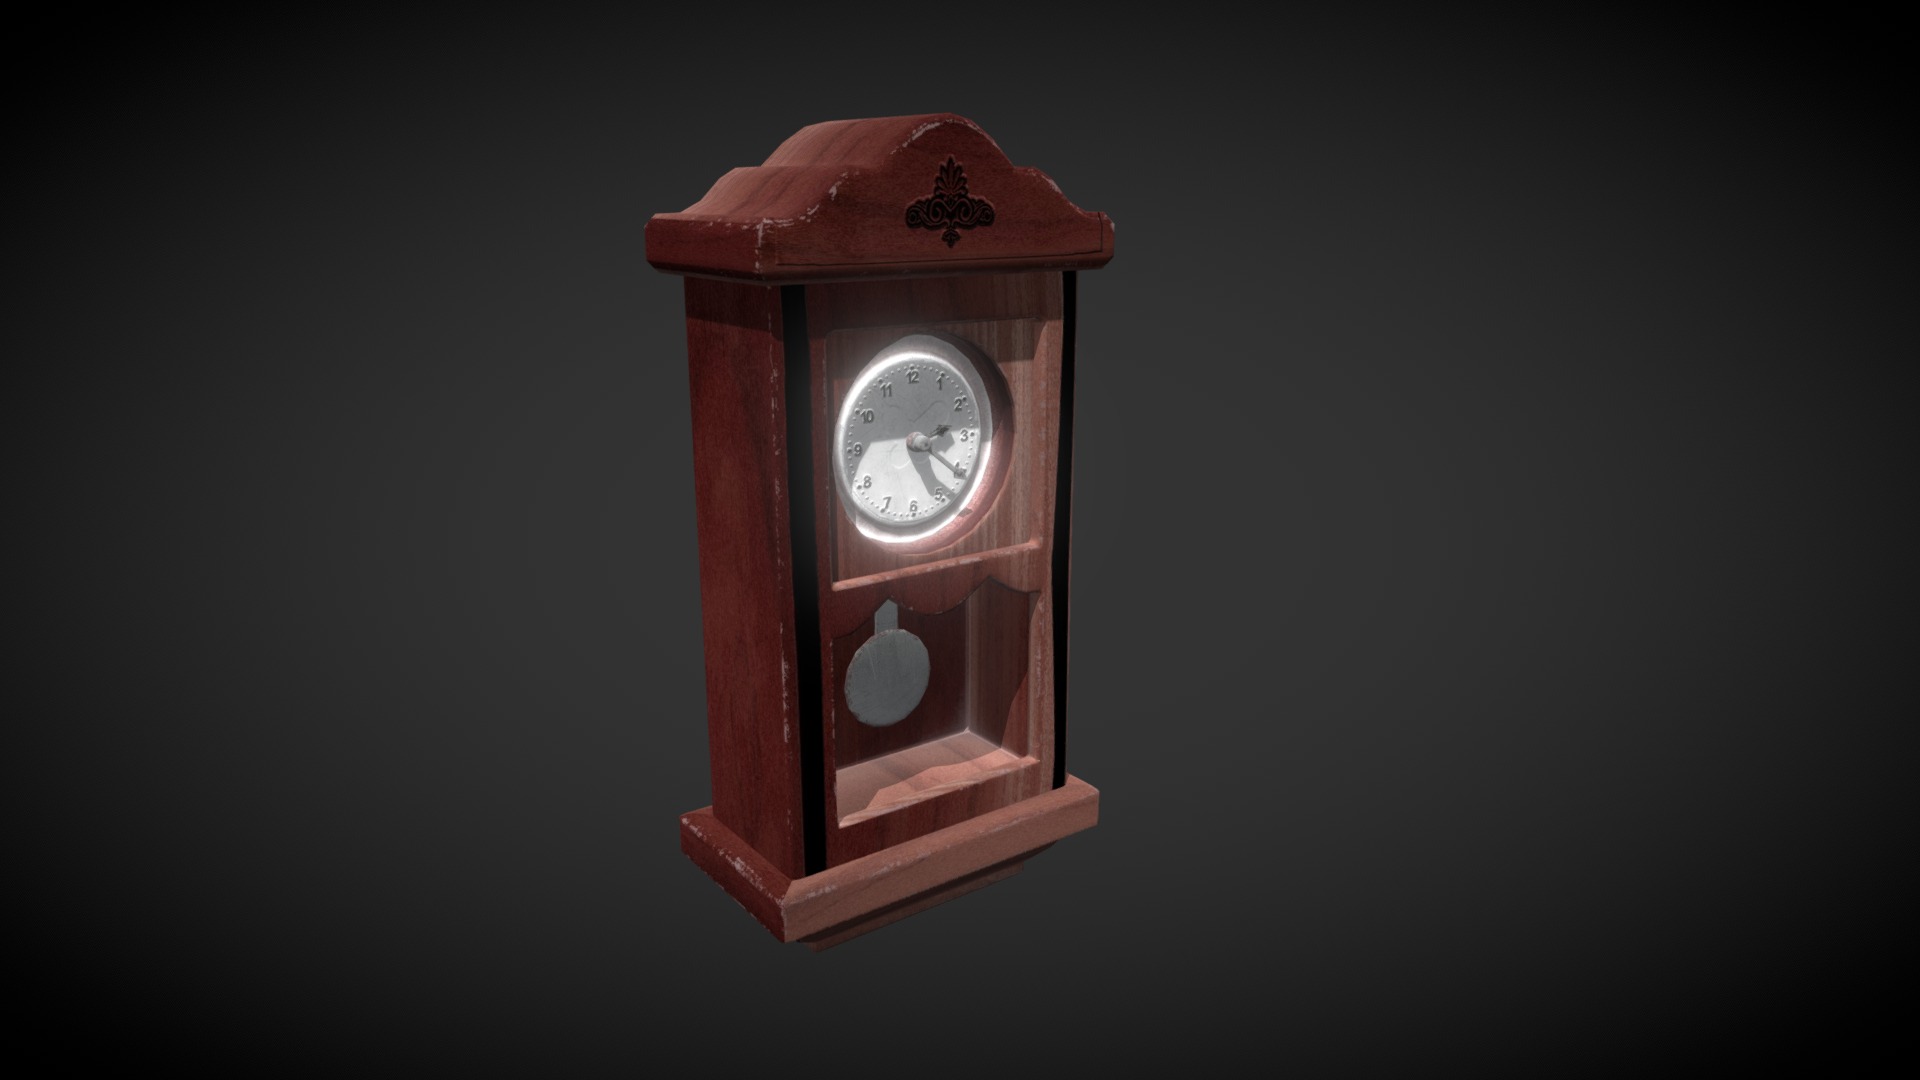 3D model Vintage Clock in 3ds designed by me - This is a 3D model of the Vintage Clock in 3ds designed by me. The 3D model is about a wooden clock with a gold frame.